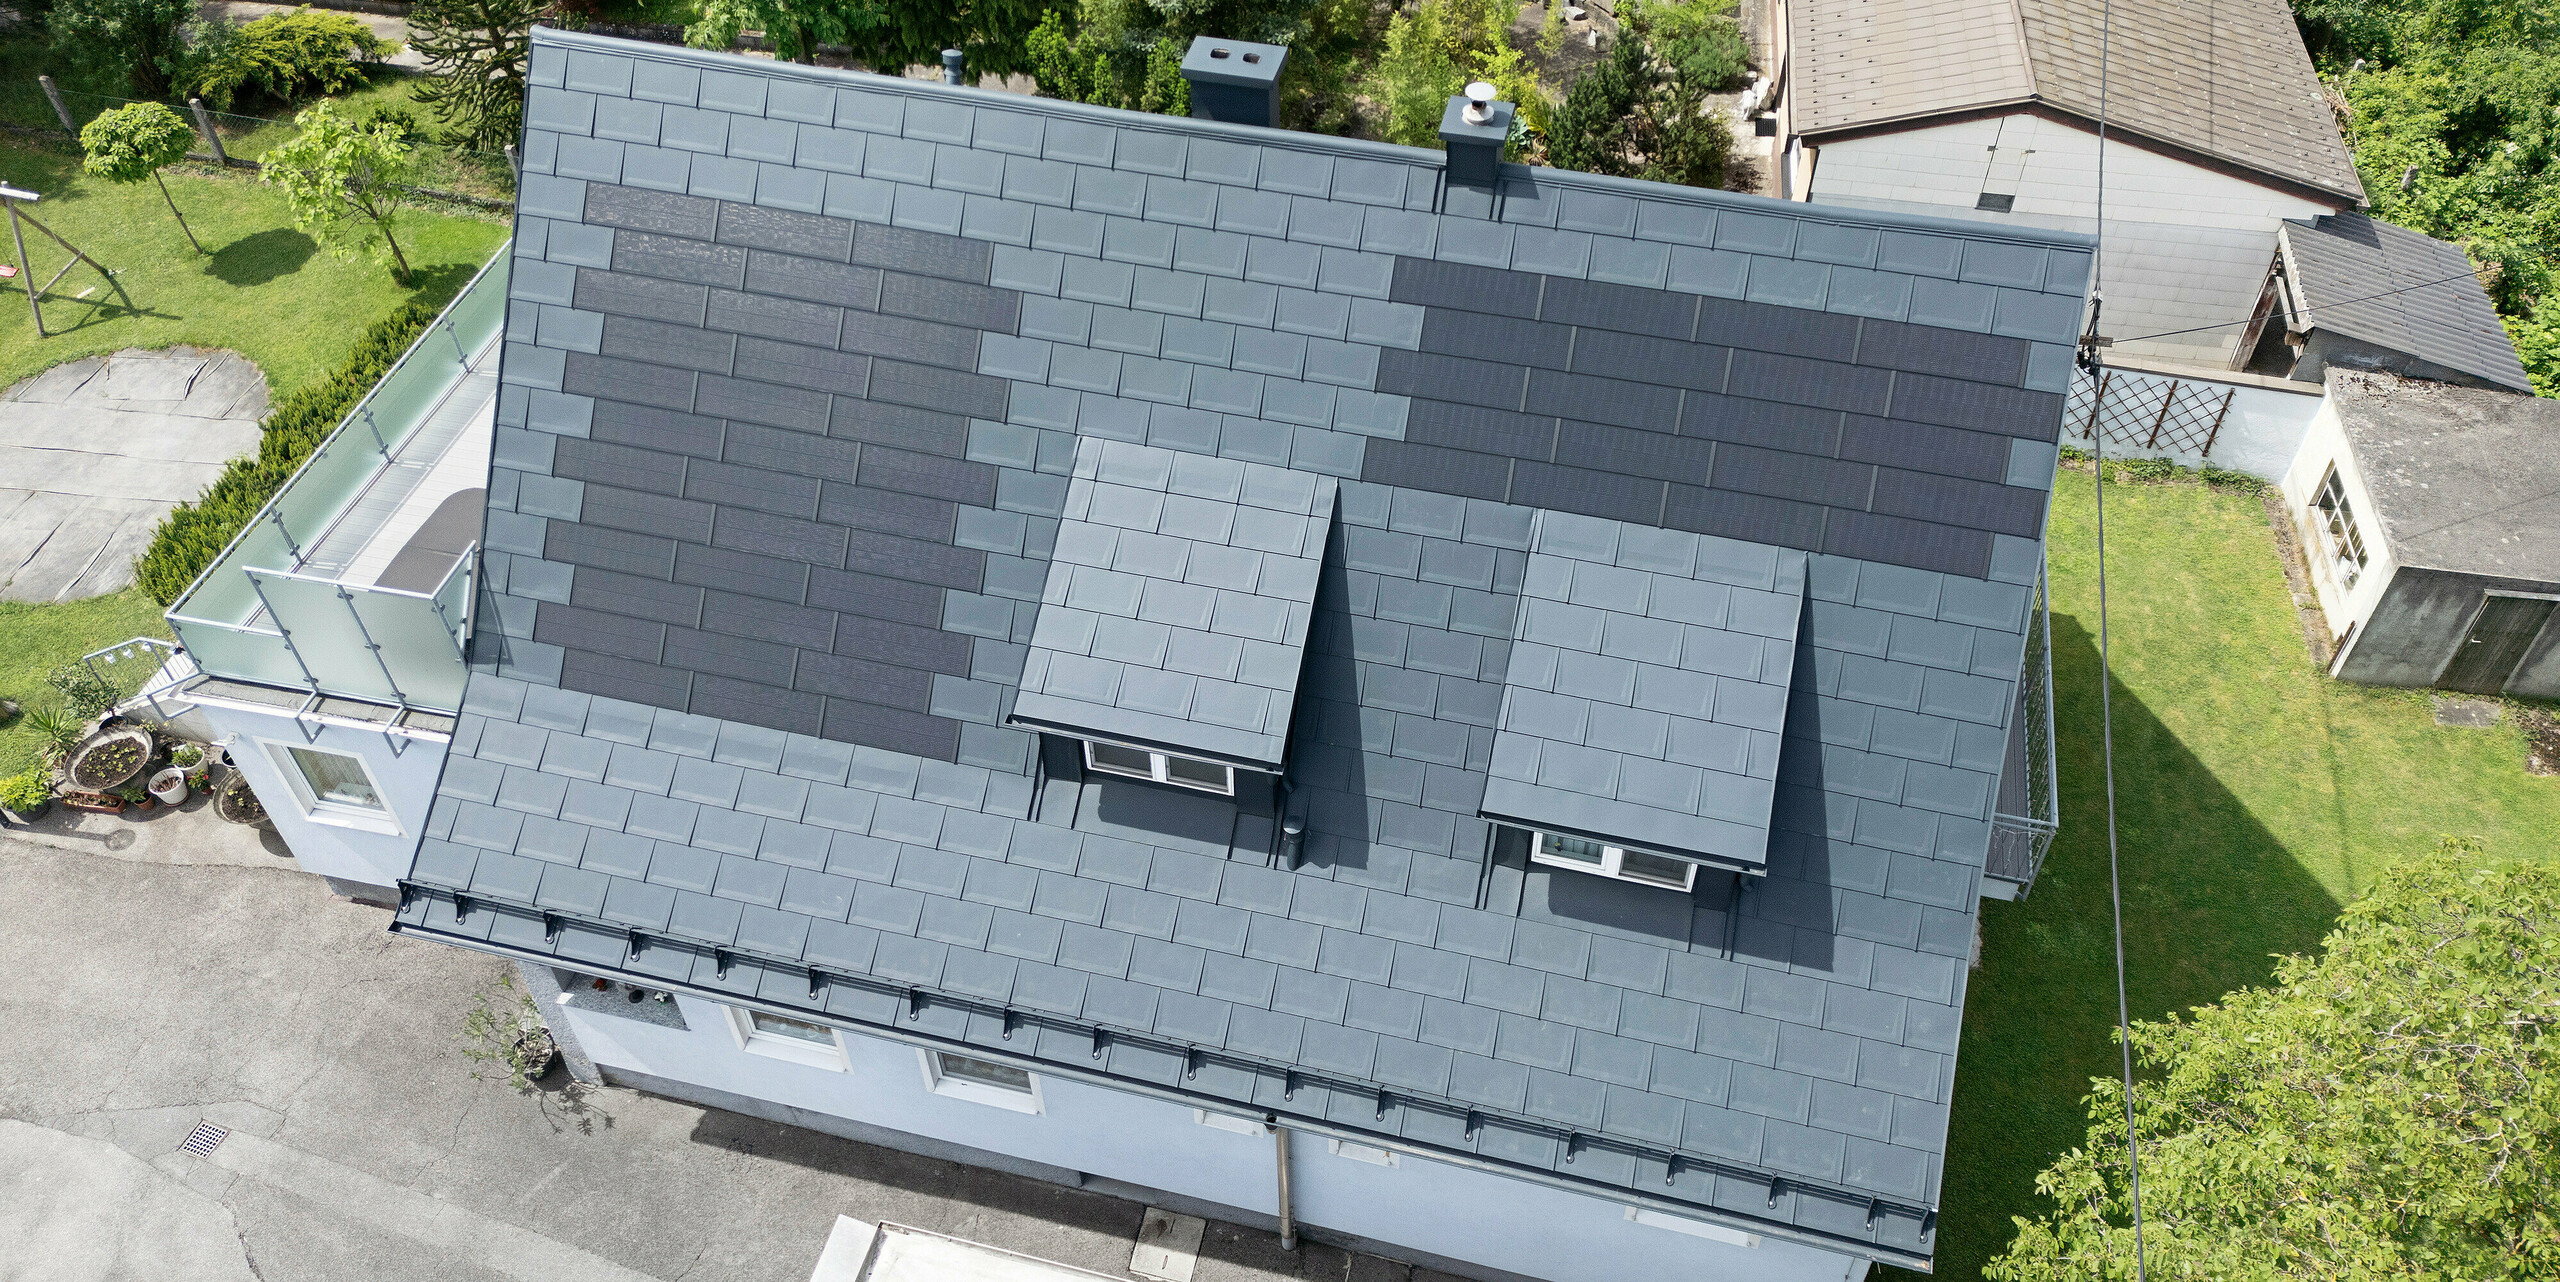 Komplett saniertes Dach eines Einfamilienhauses in Leonding mit PREFA Solardachplatten in Anthrazit. Die Vogelperspektive zeigt das modernisierte Dach mit integrierten Solarmodulen aus PREFA Aluminiumprodukten. Diese langlebige und witterungsbeständige Lösung bietet eine nachhaltige und energieeffiziente Möglichkeit zur Stromerzeugung. Das Bild verdeutlicht die ästhetische Integration der Solarmodule in die Dachfläche, die eine moderne und funktionale Architektur unterstützt. Die innovativen Solardachplatten wurden rund um zwei Schleppgauben platziert.